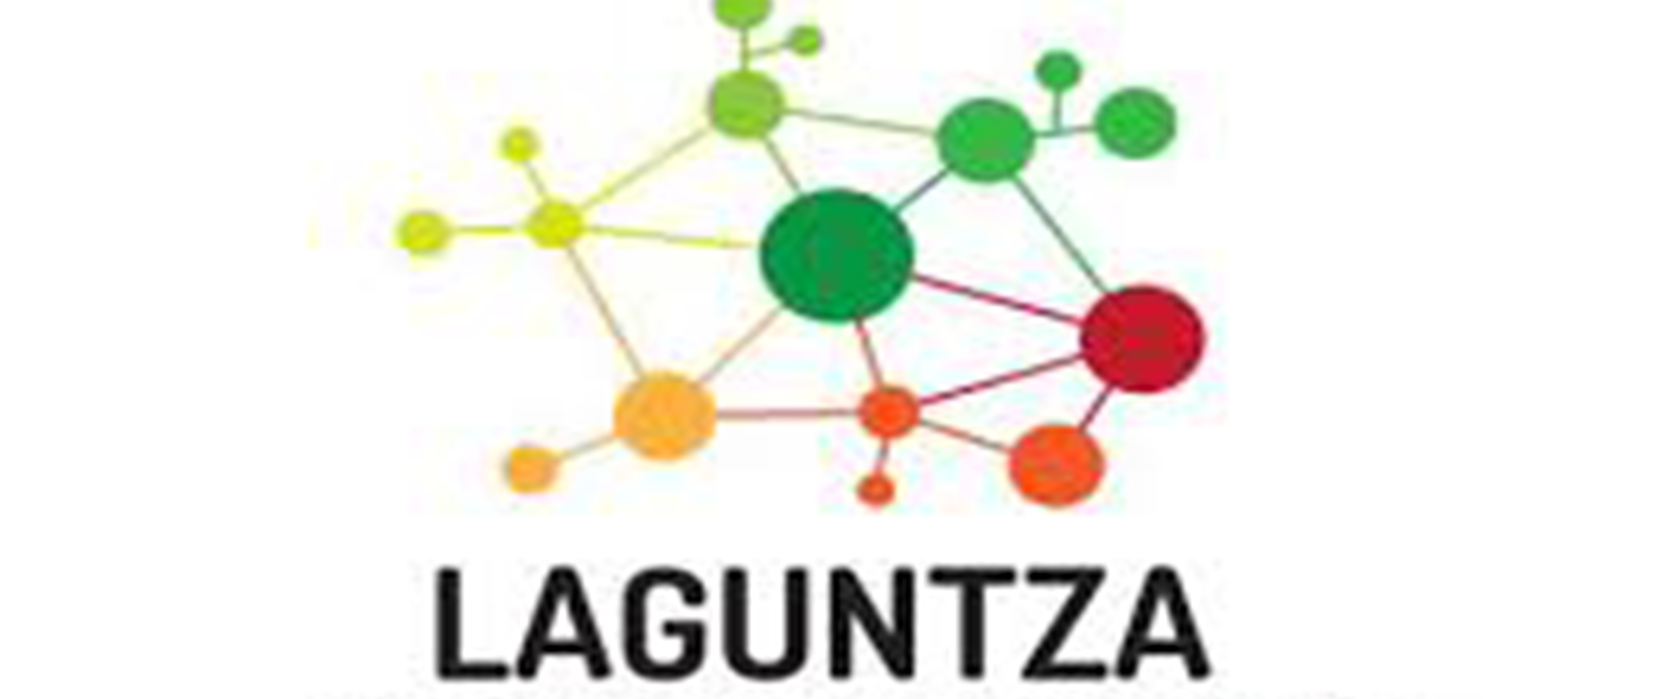 El programa ‘Laguntza’ de prevención del acoso y ciberacoso escolar llega a la educación secundaria navarra